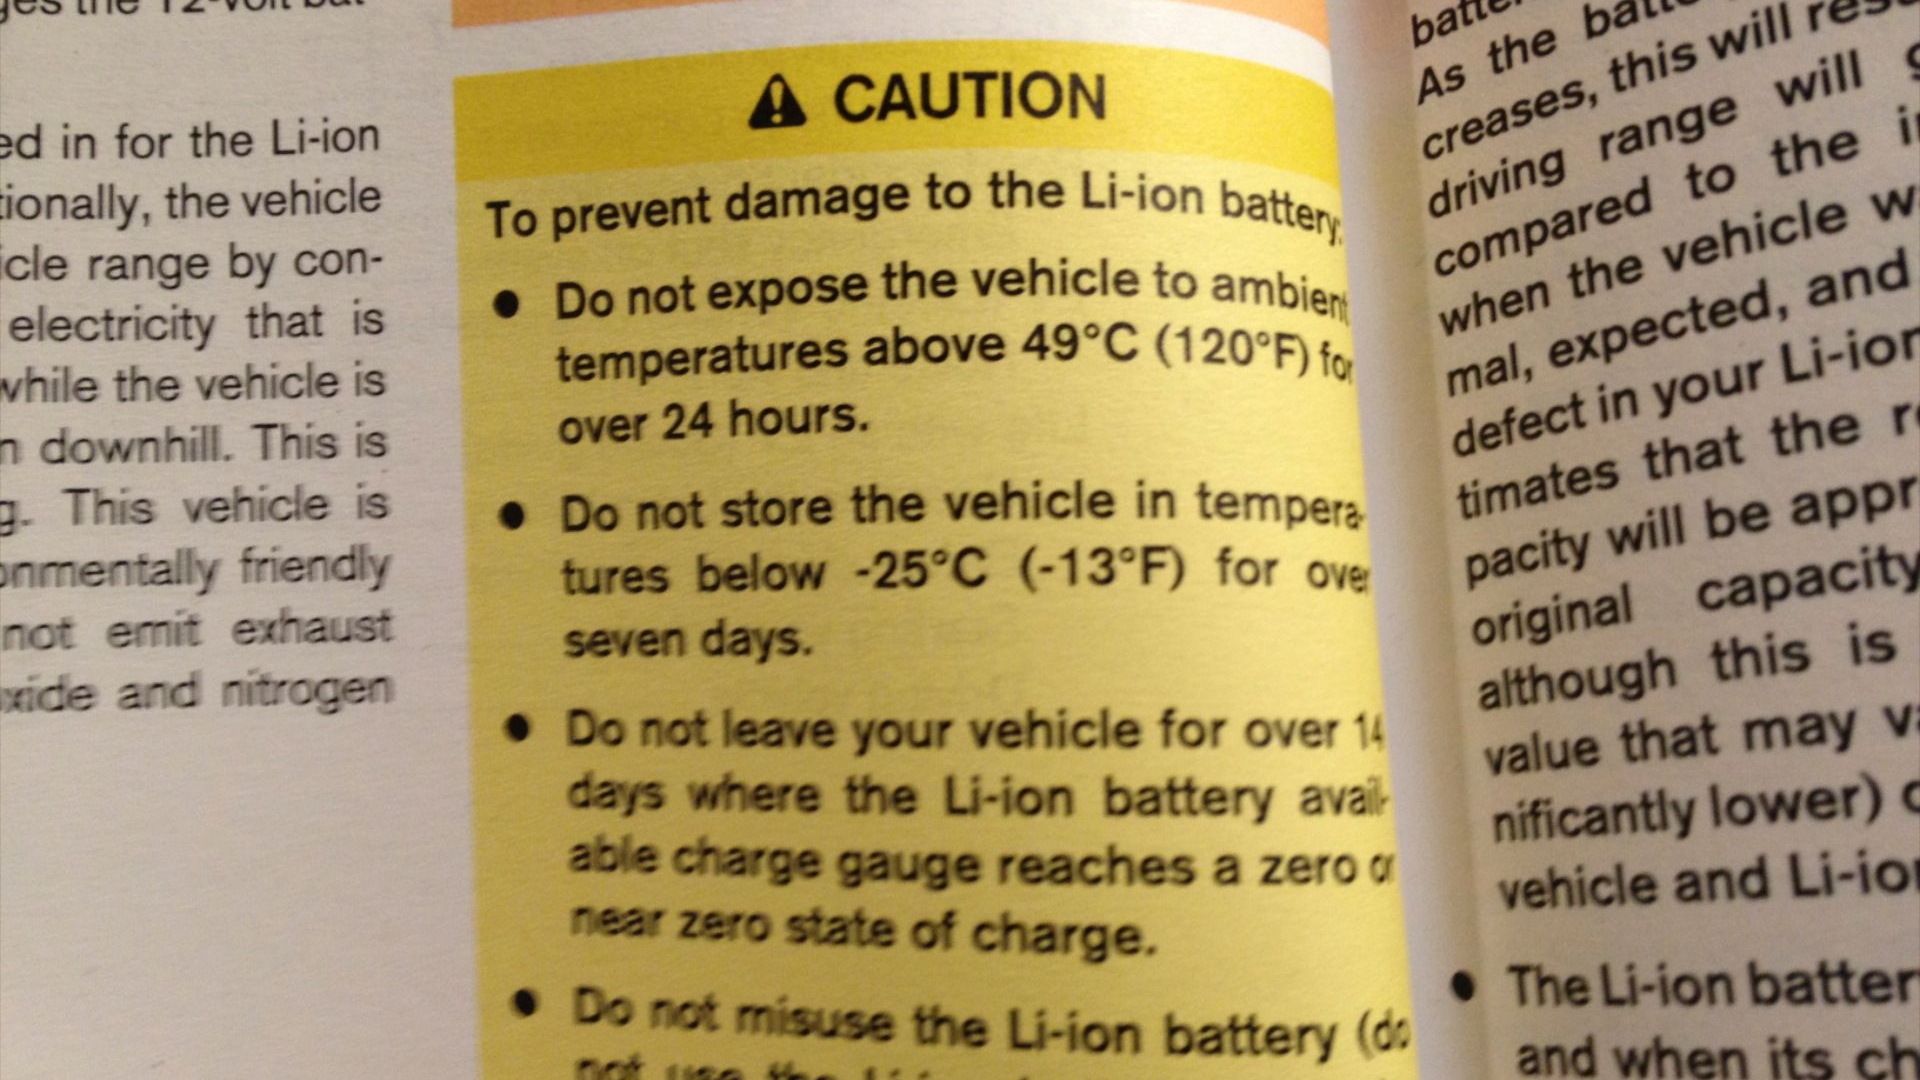 2011 NIssan Leaf Battery Warranty Information